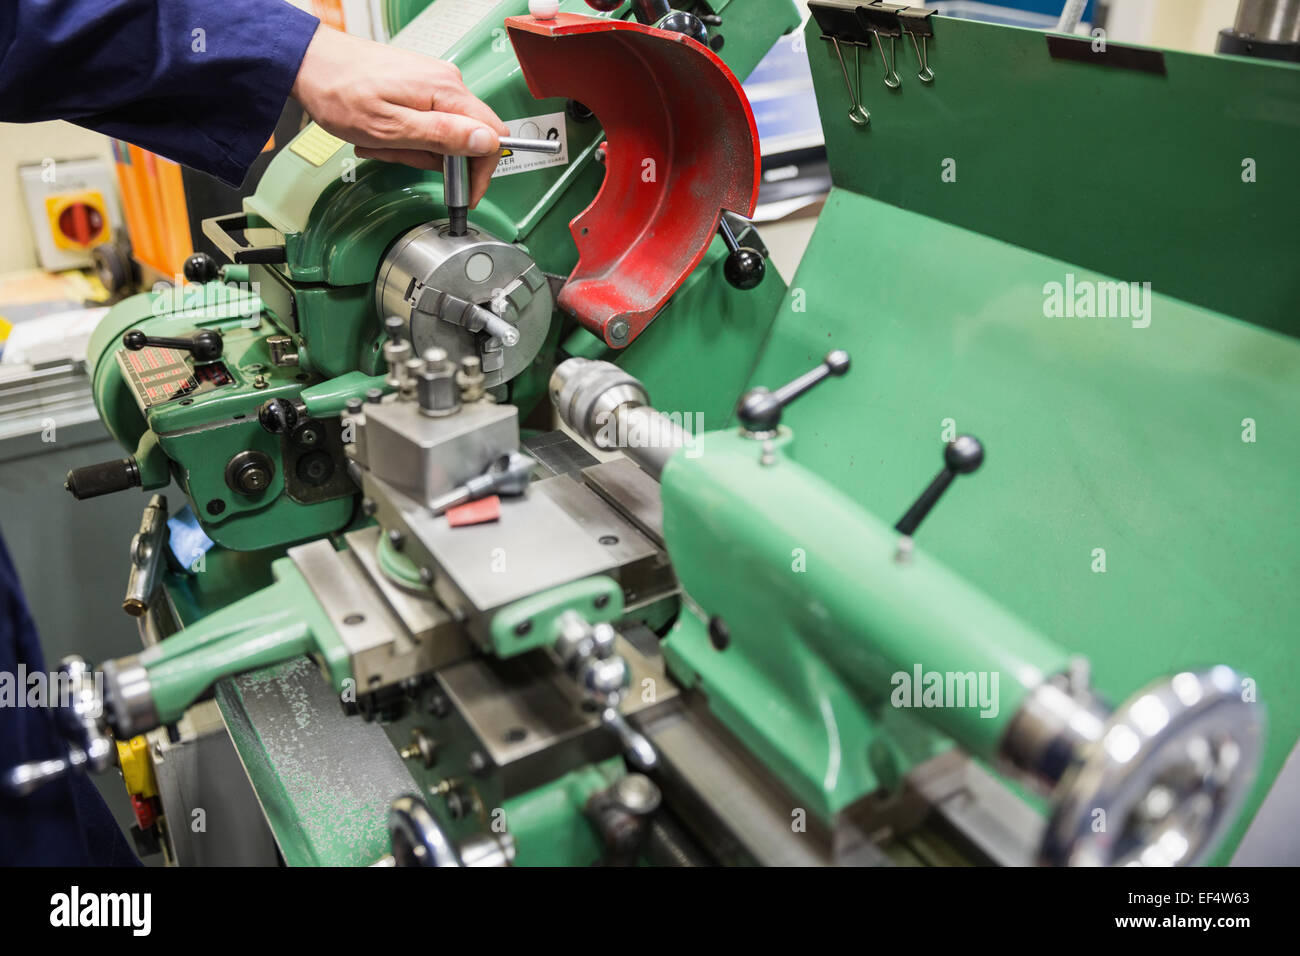 Engineering student using heavy machinery Stock Photo